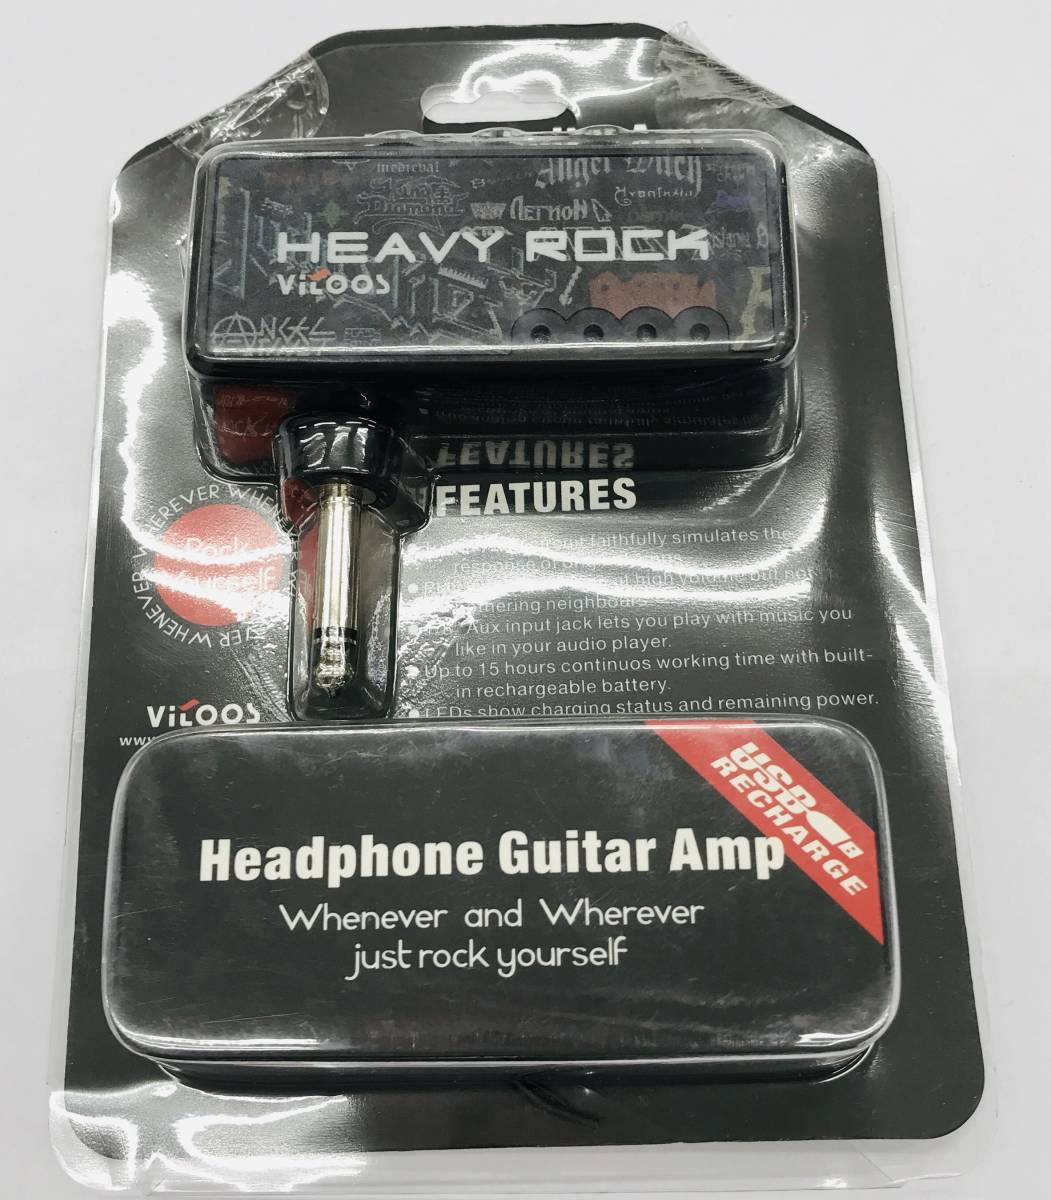 ★【在庫処分価格】Headphone Guitar Amp HEAVY ROCK ヘッドフォン ロック ミニ アンプ☆T01-341aの画像1